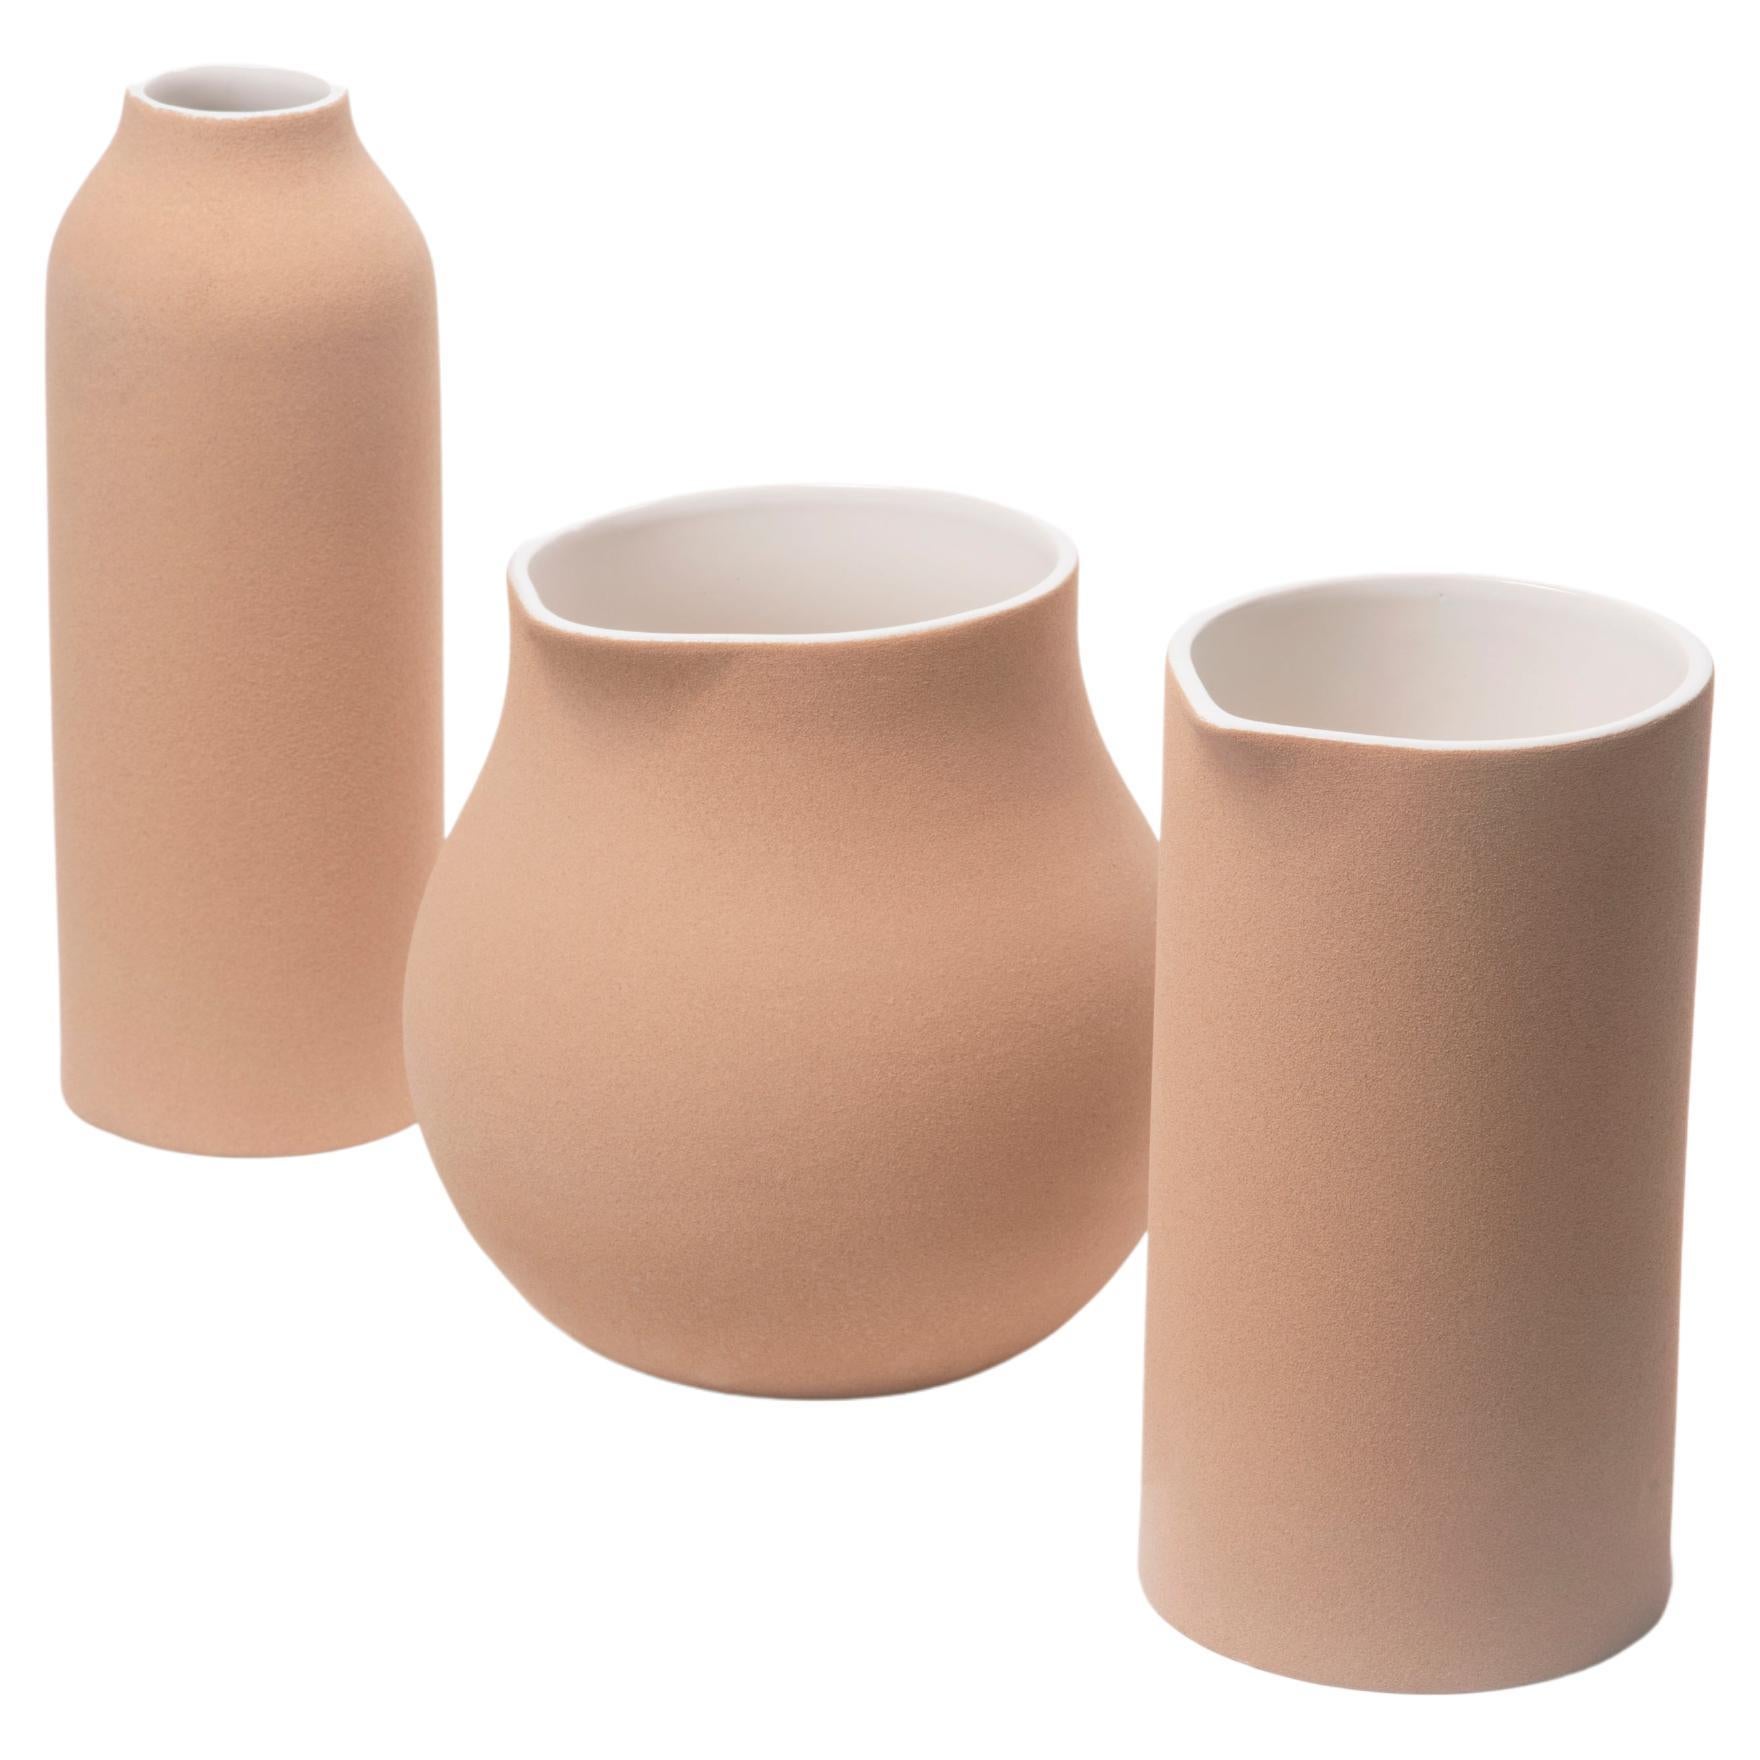 Ensemble de trois vases beiges en grès et argile à haute température